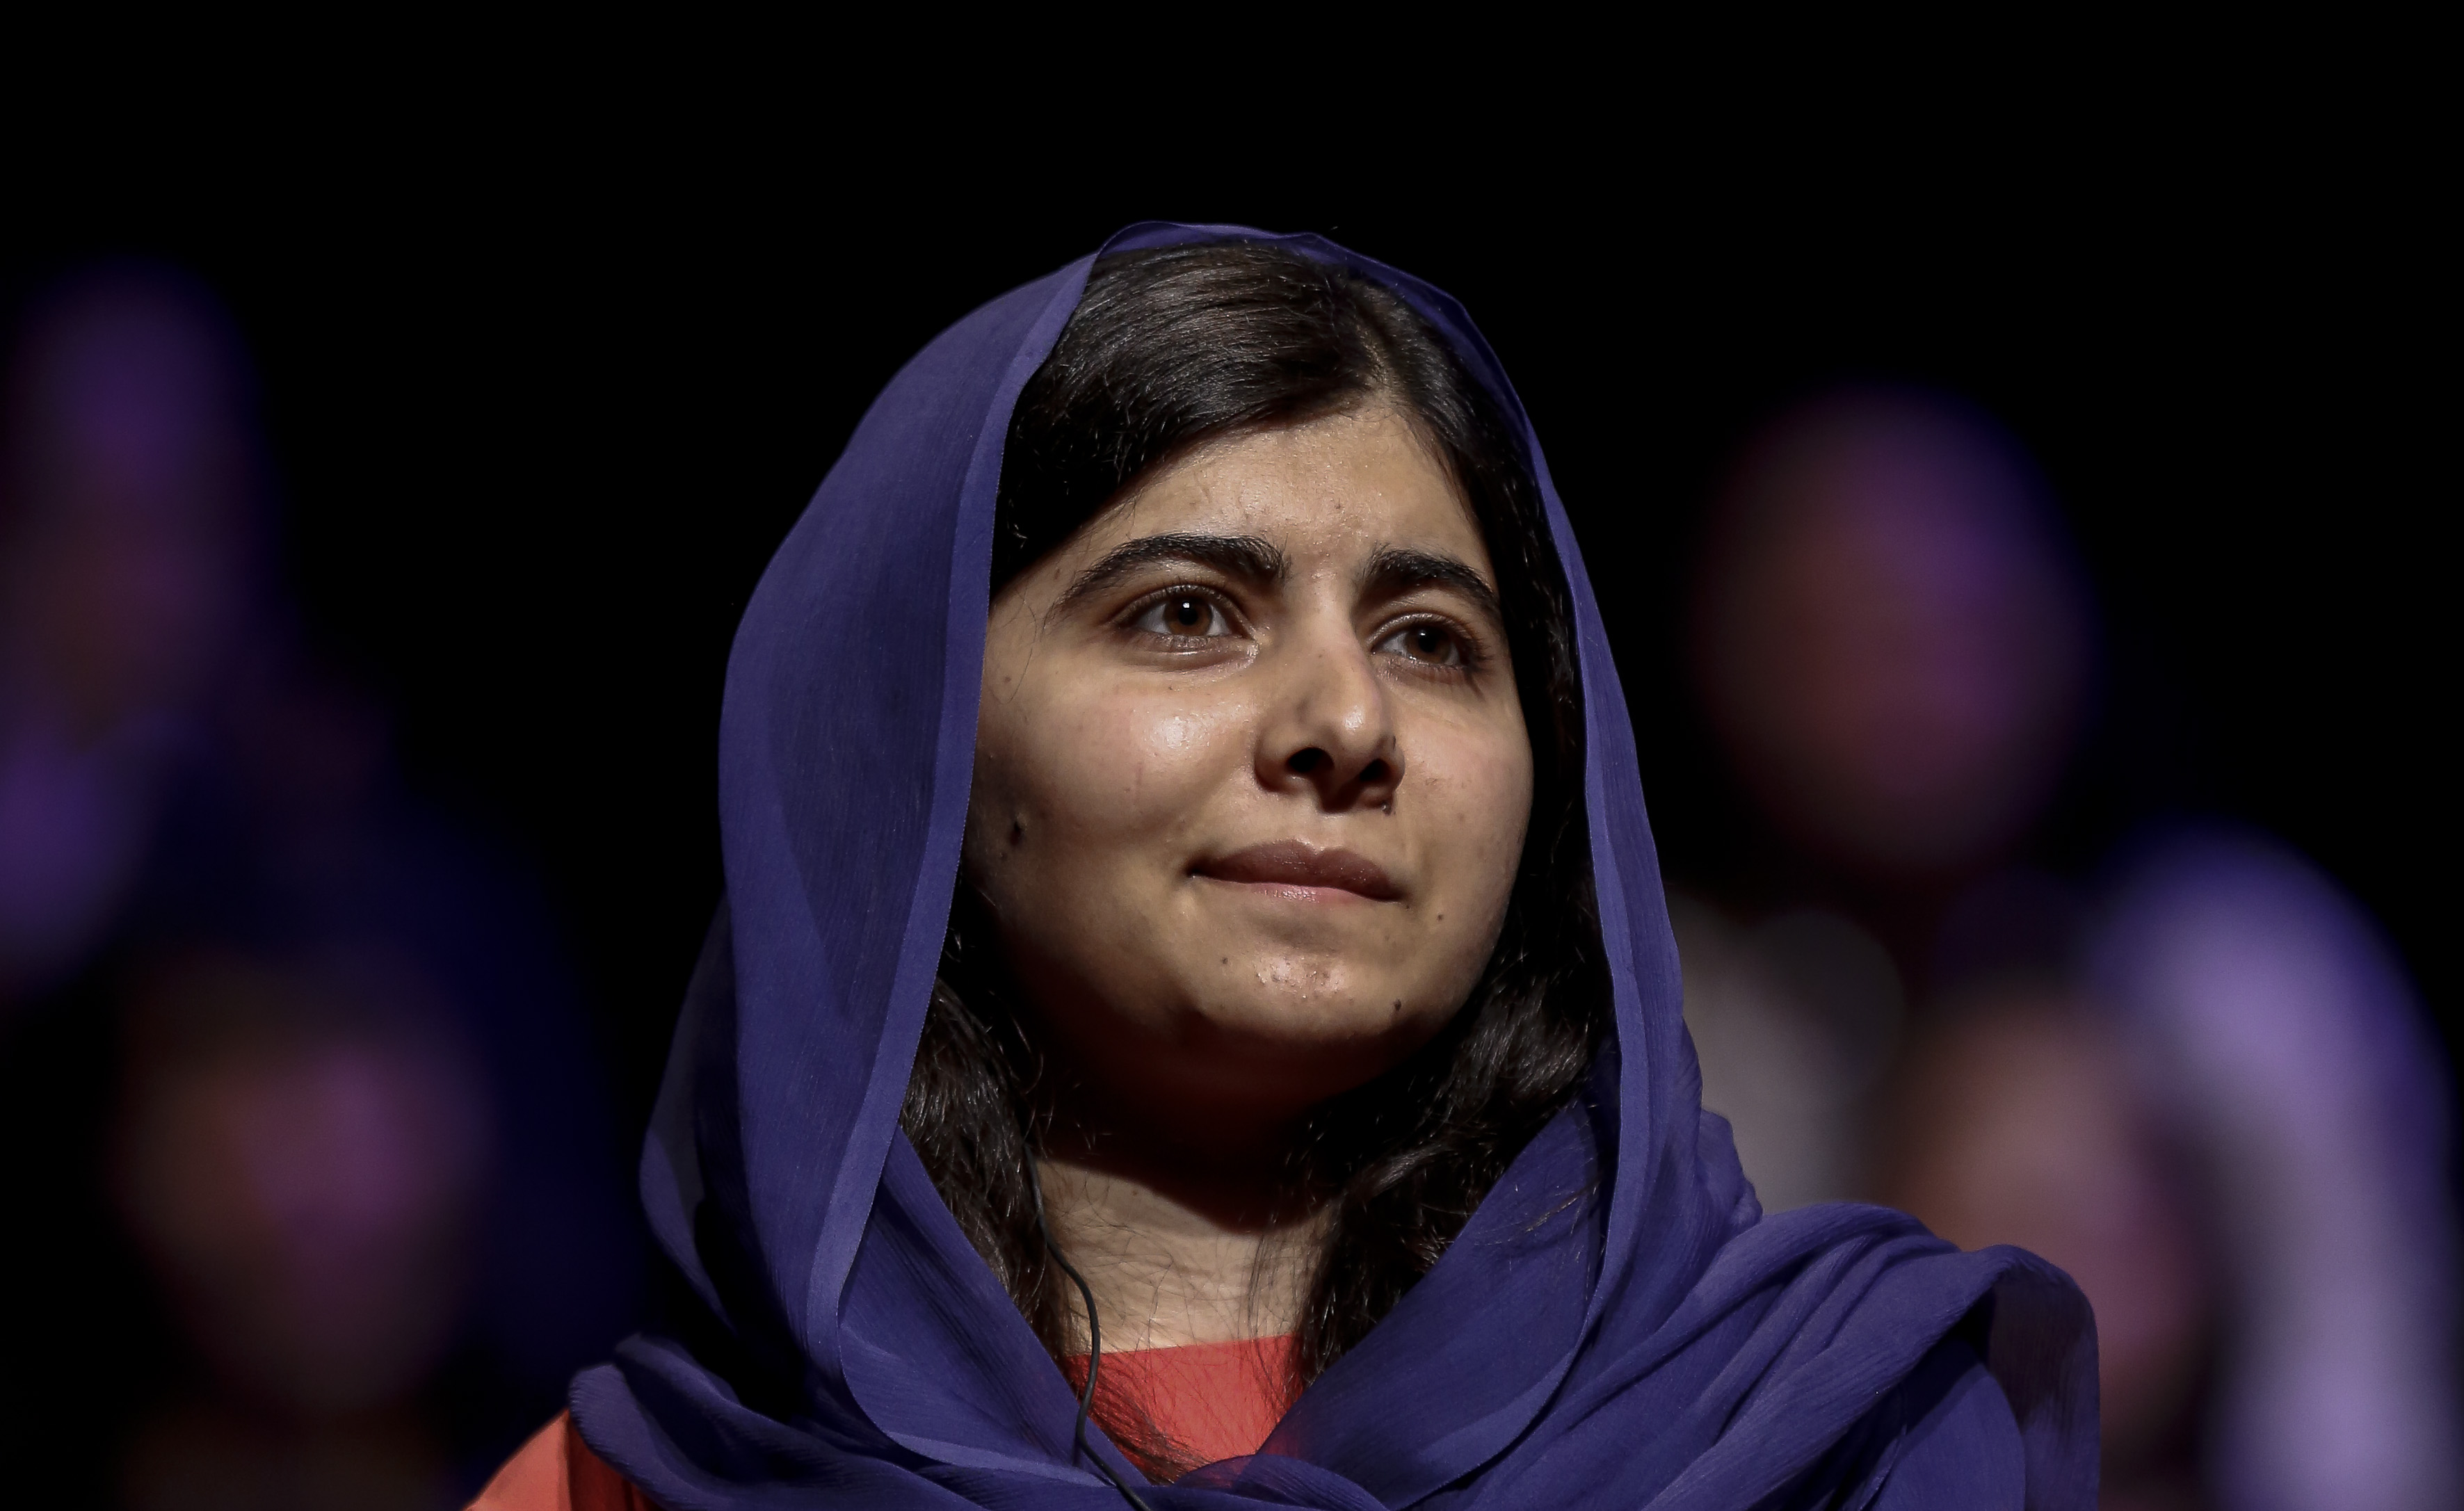 Malala recibió diploma por filosofía, política, y economía de la universidad de Oxford